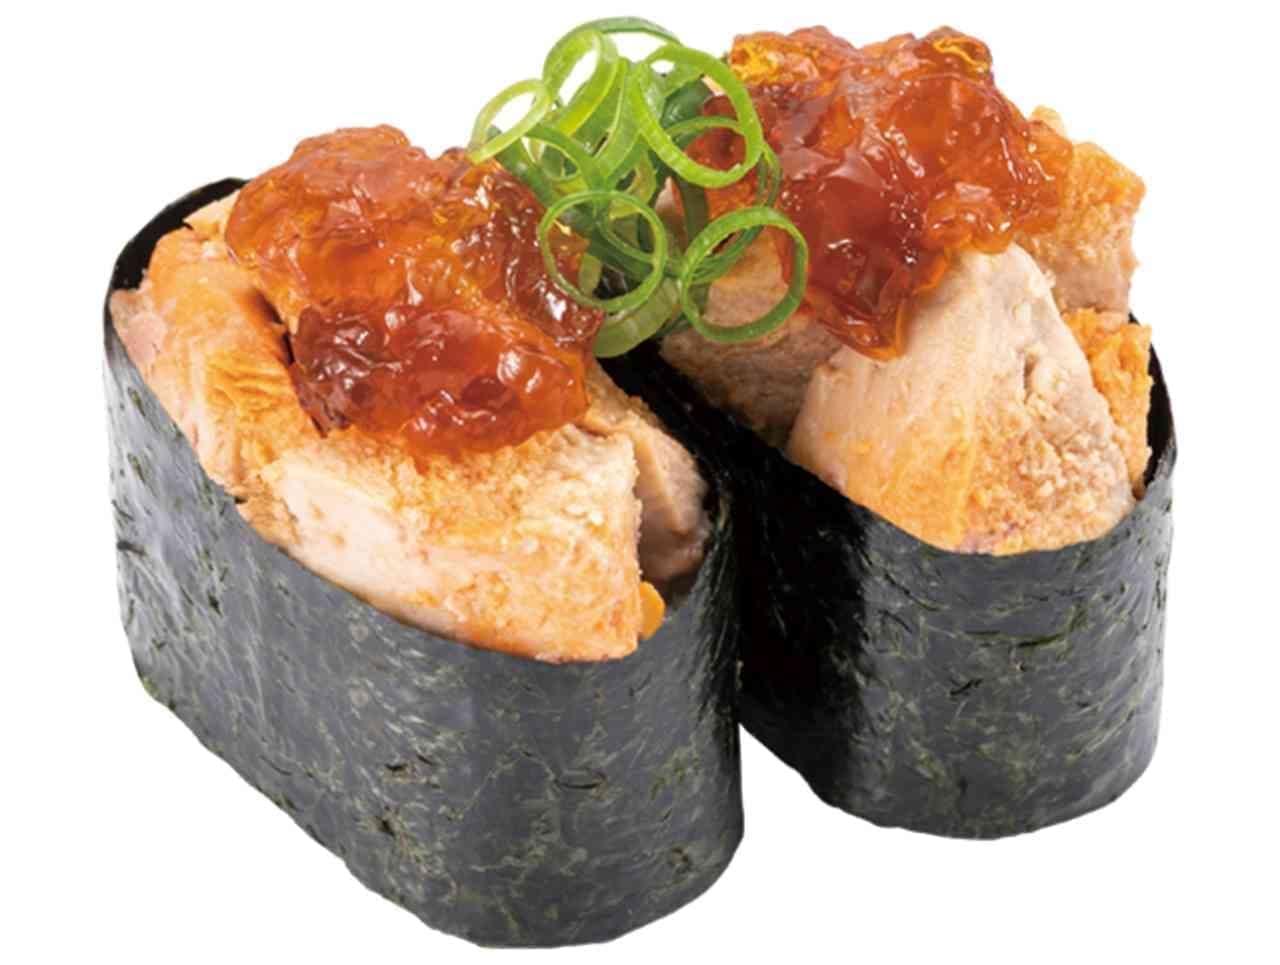 かっぱ寿司 “牡蠣ととろ市場” 